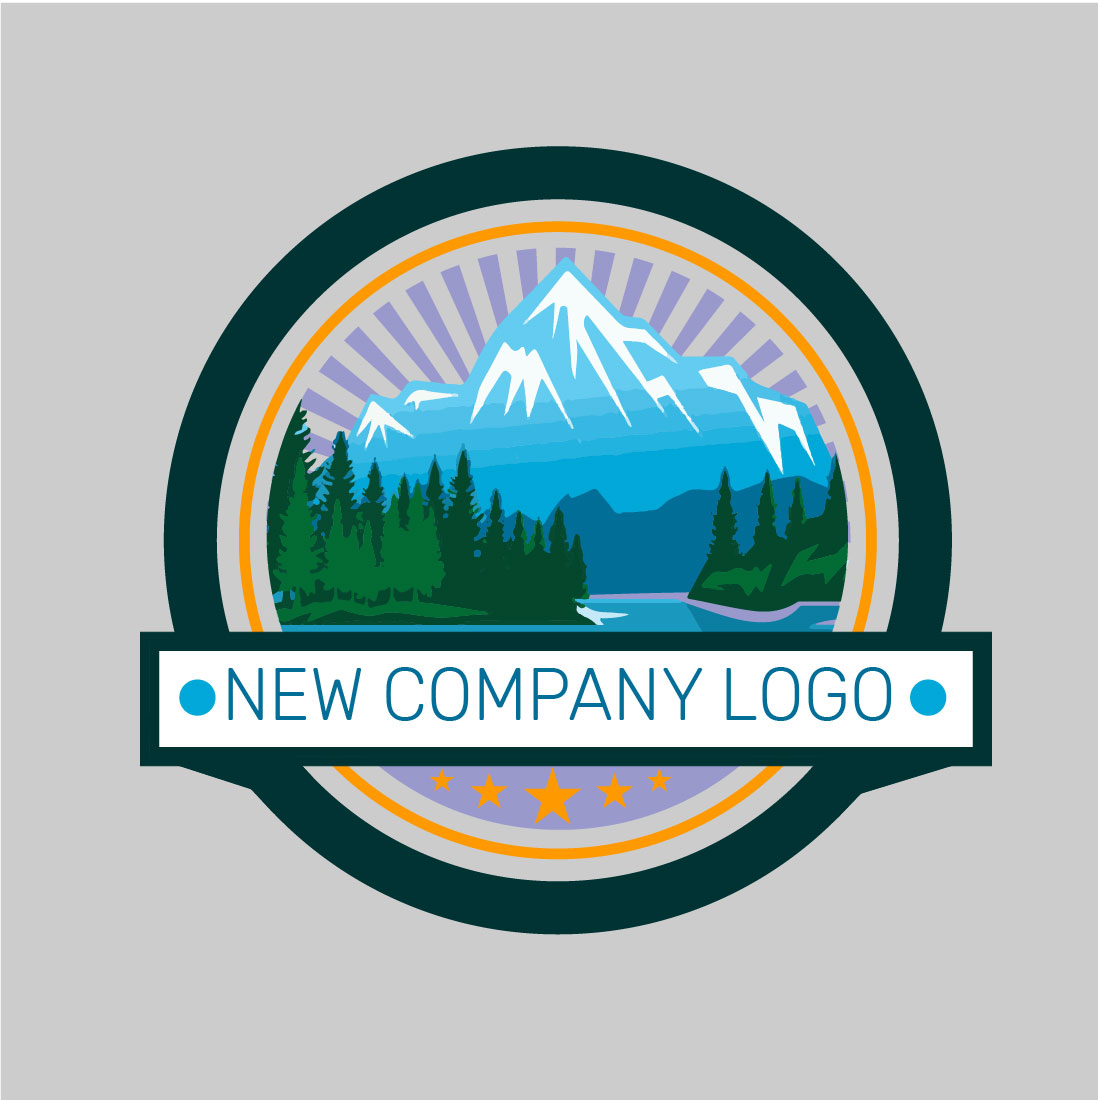 Minimailist Logo Design cover image.